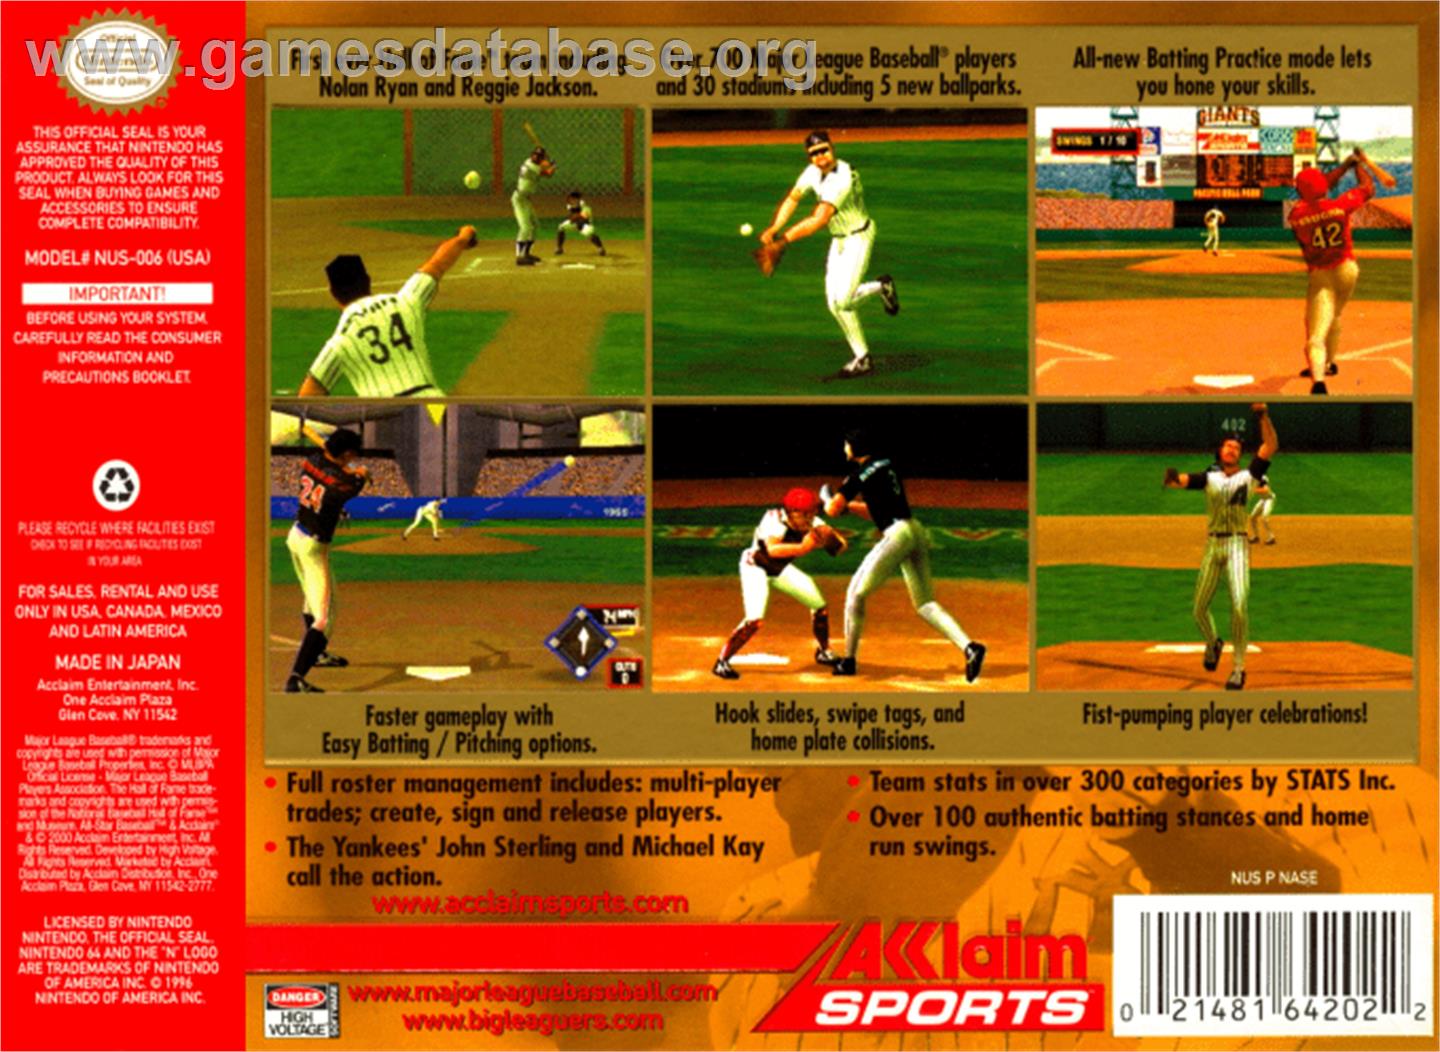 All-Star Baseball 2001 - Nintendo N64 - Artwork - Box Back